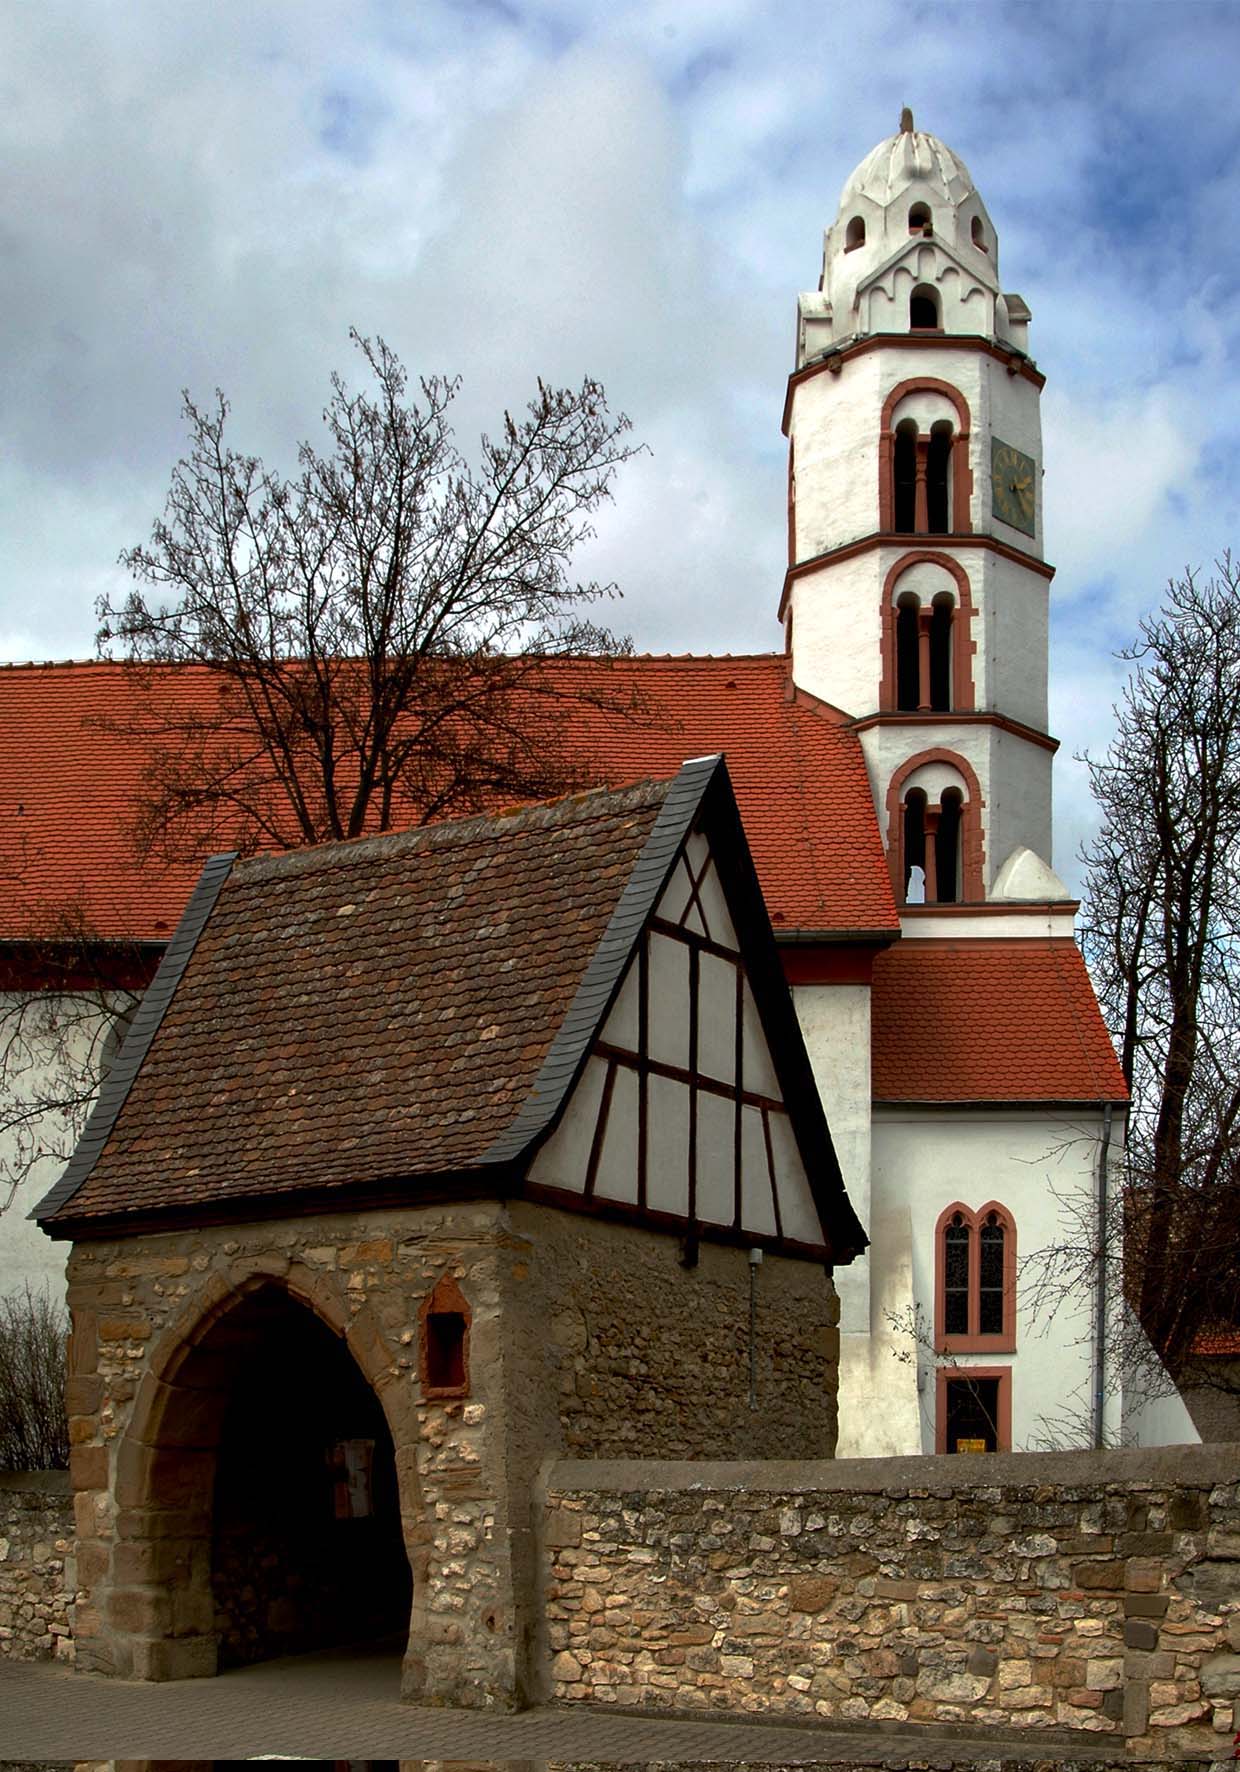 Blick auf die evangelische Kirche (Heidenturmkirche) in Dittelsheim-Hessloch.
